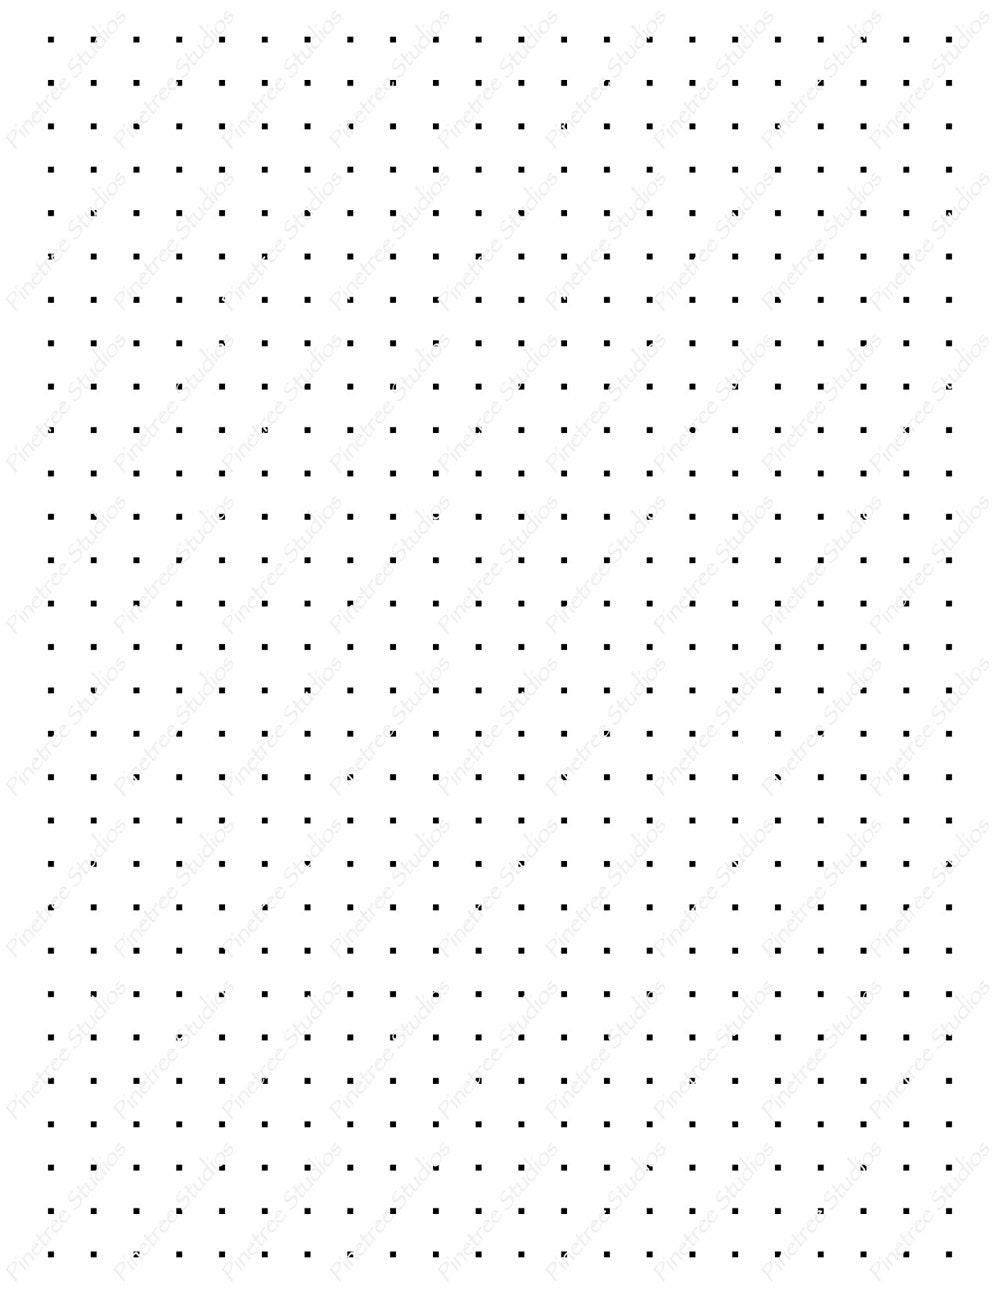 Square Dot Paper